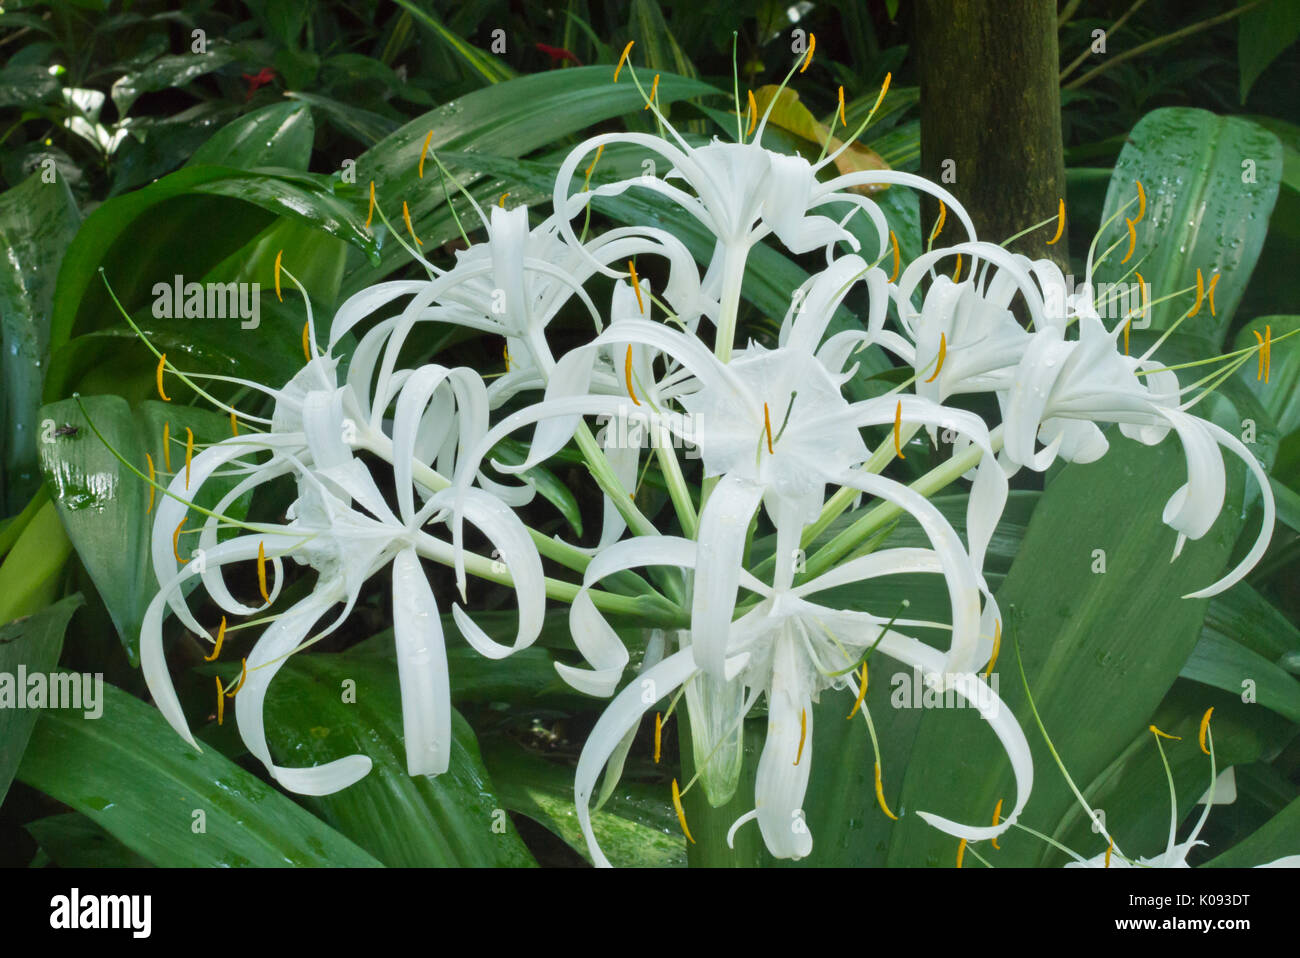 Spider lily (Hymenocallis eucharidifolia) Stock Photo